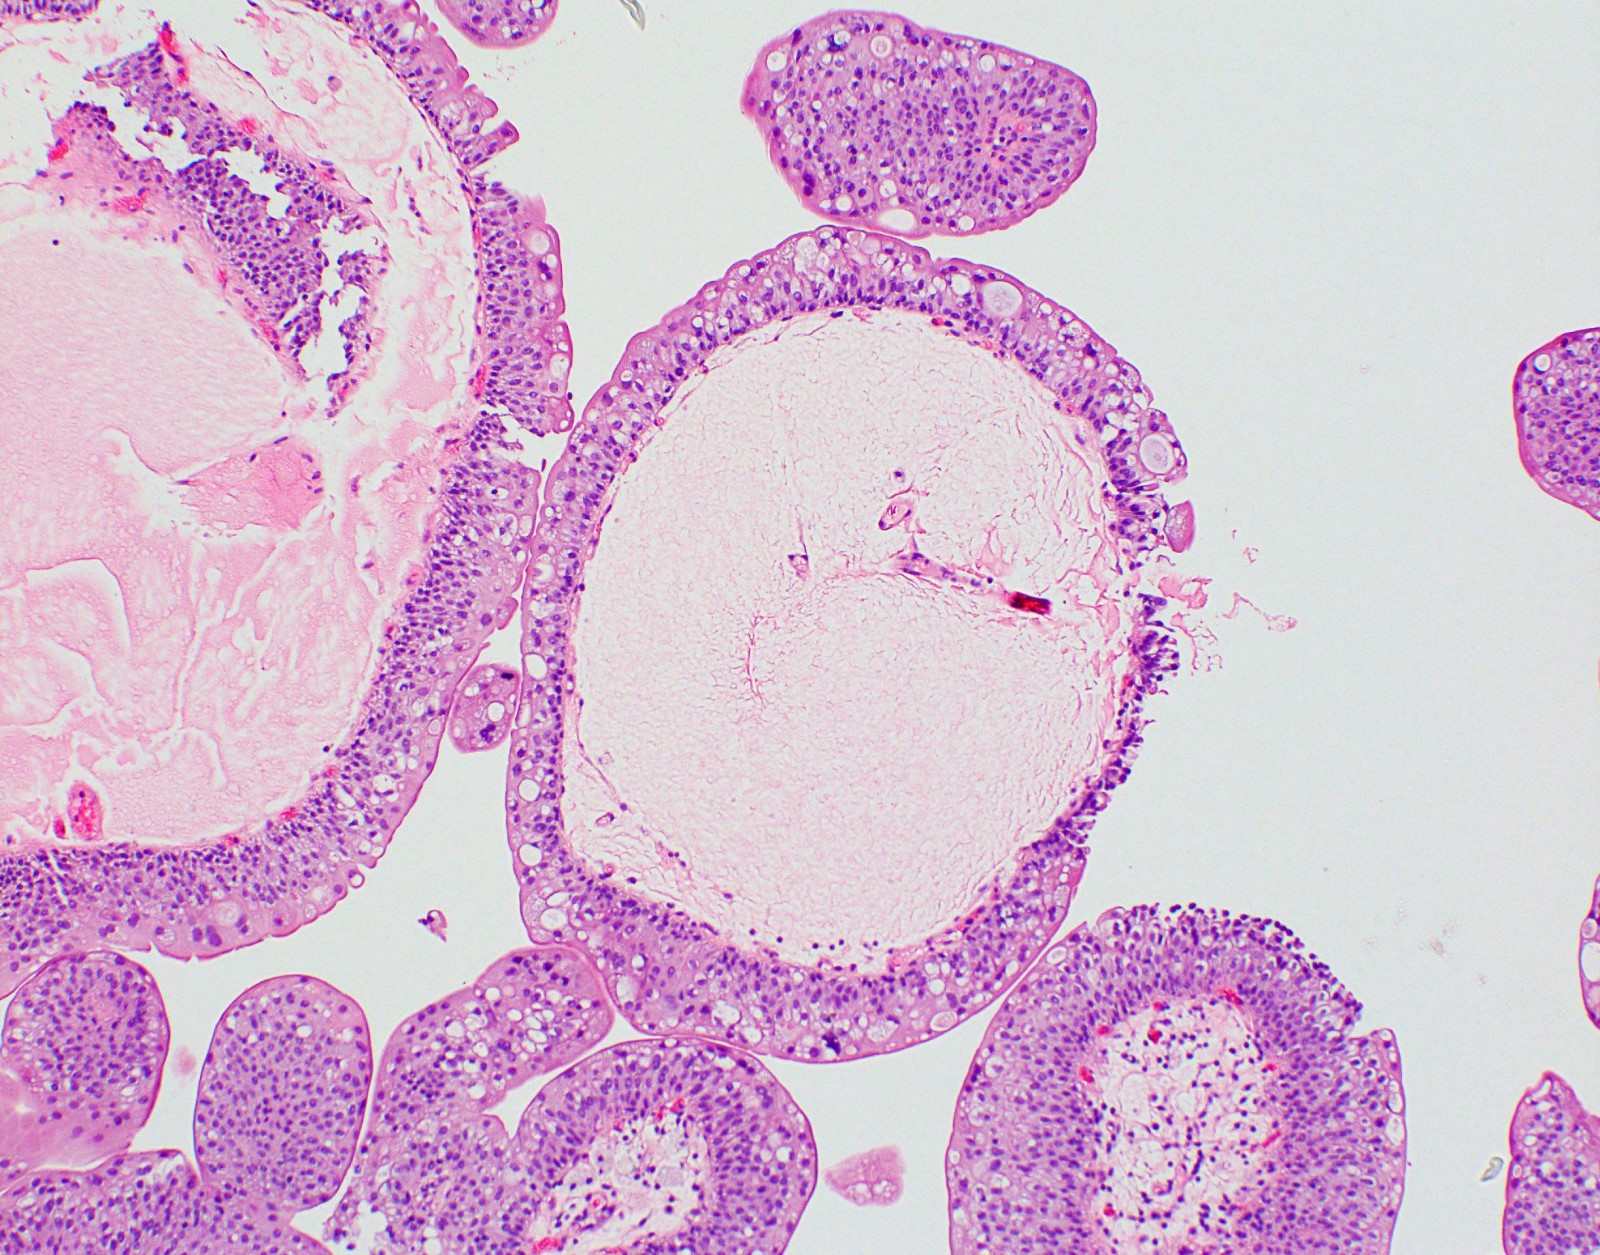 papilloma of bladder histology